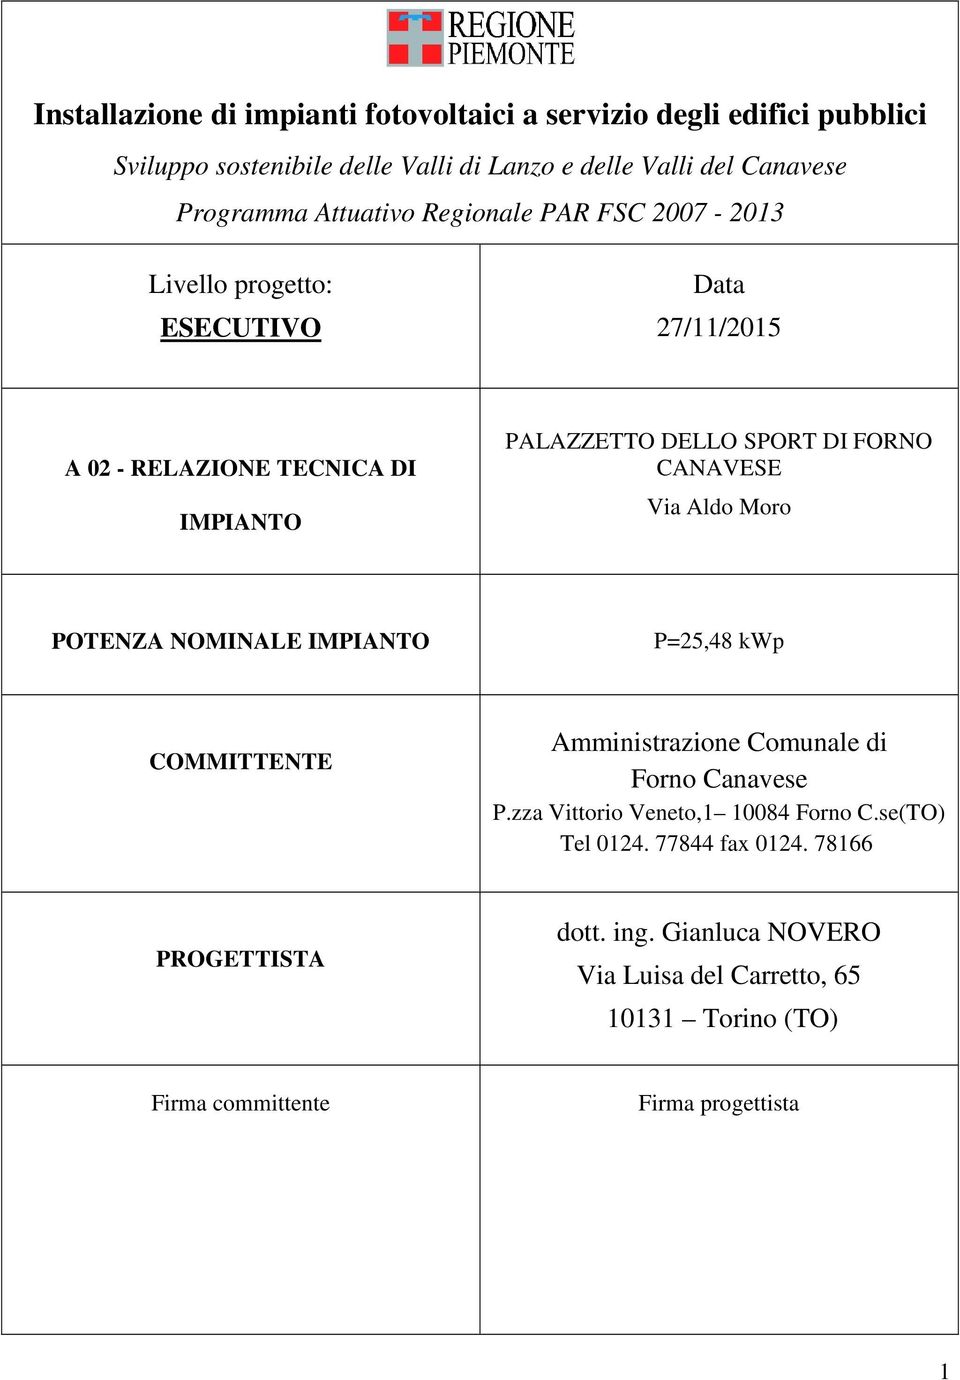 CANAVESE Via Aldo Moro POTENZA NOMINALE IMPIANTO P=25,48 kwp COMMITTENTE Amministrazione Comunale di Forno Canavese P.zza Vittorio Veneto,1 10084 Forno C.